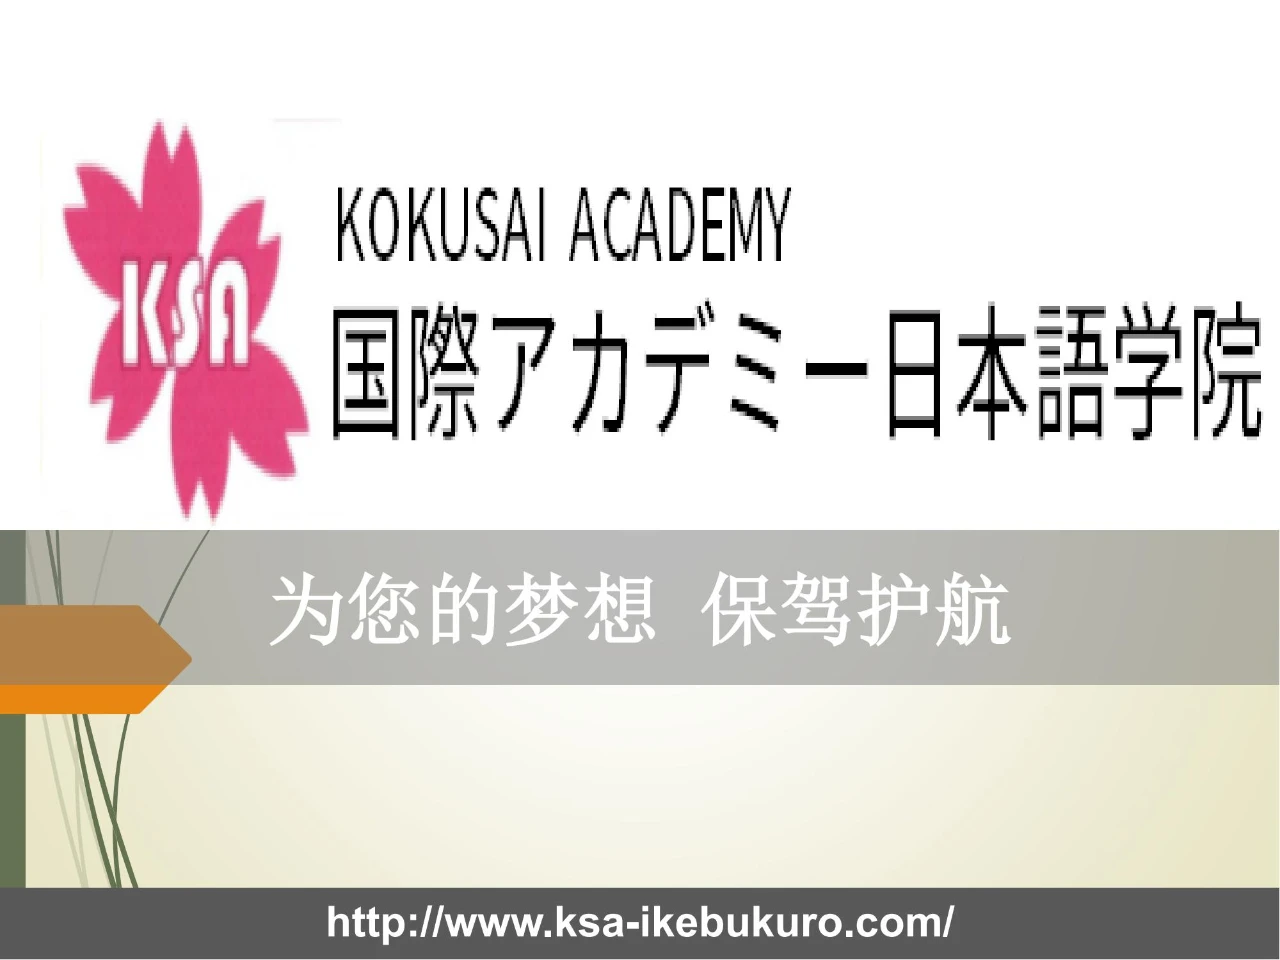 第31届日本留学展参展校-国际アカデミー日本语学院